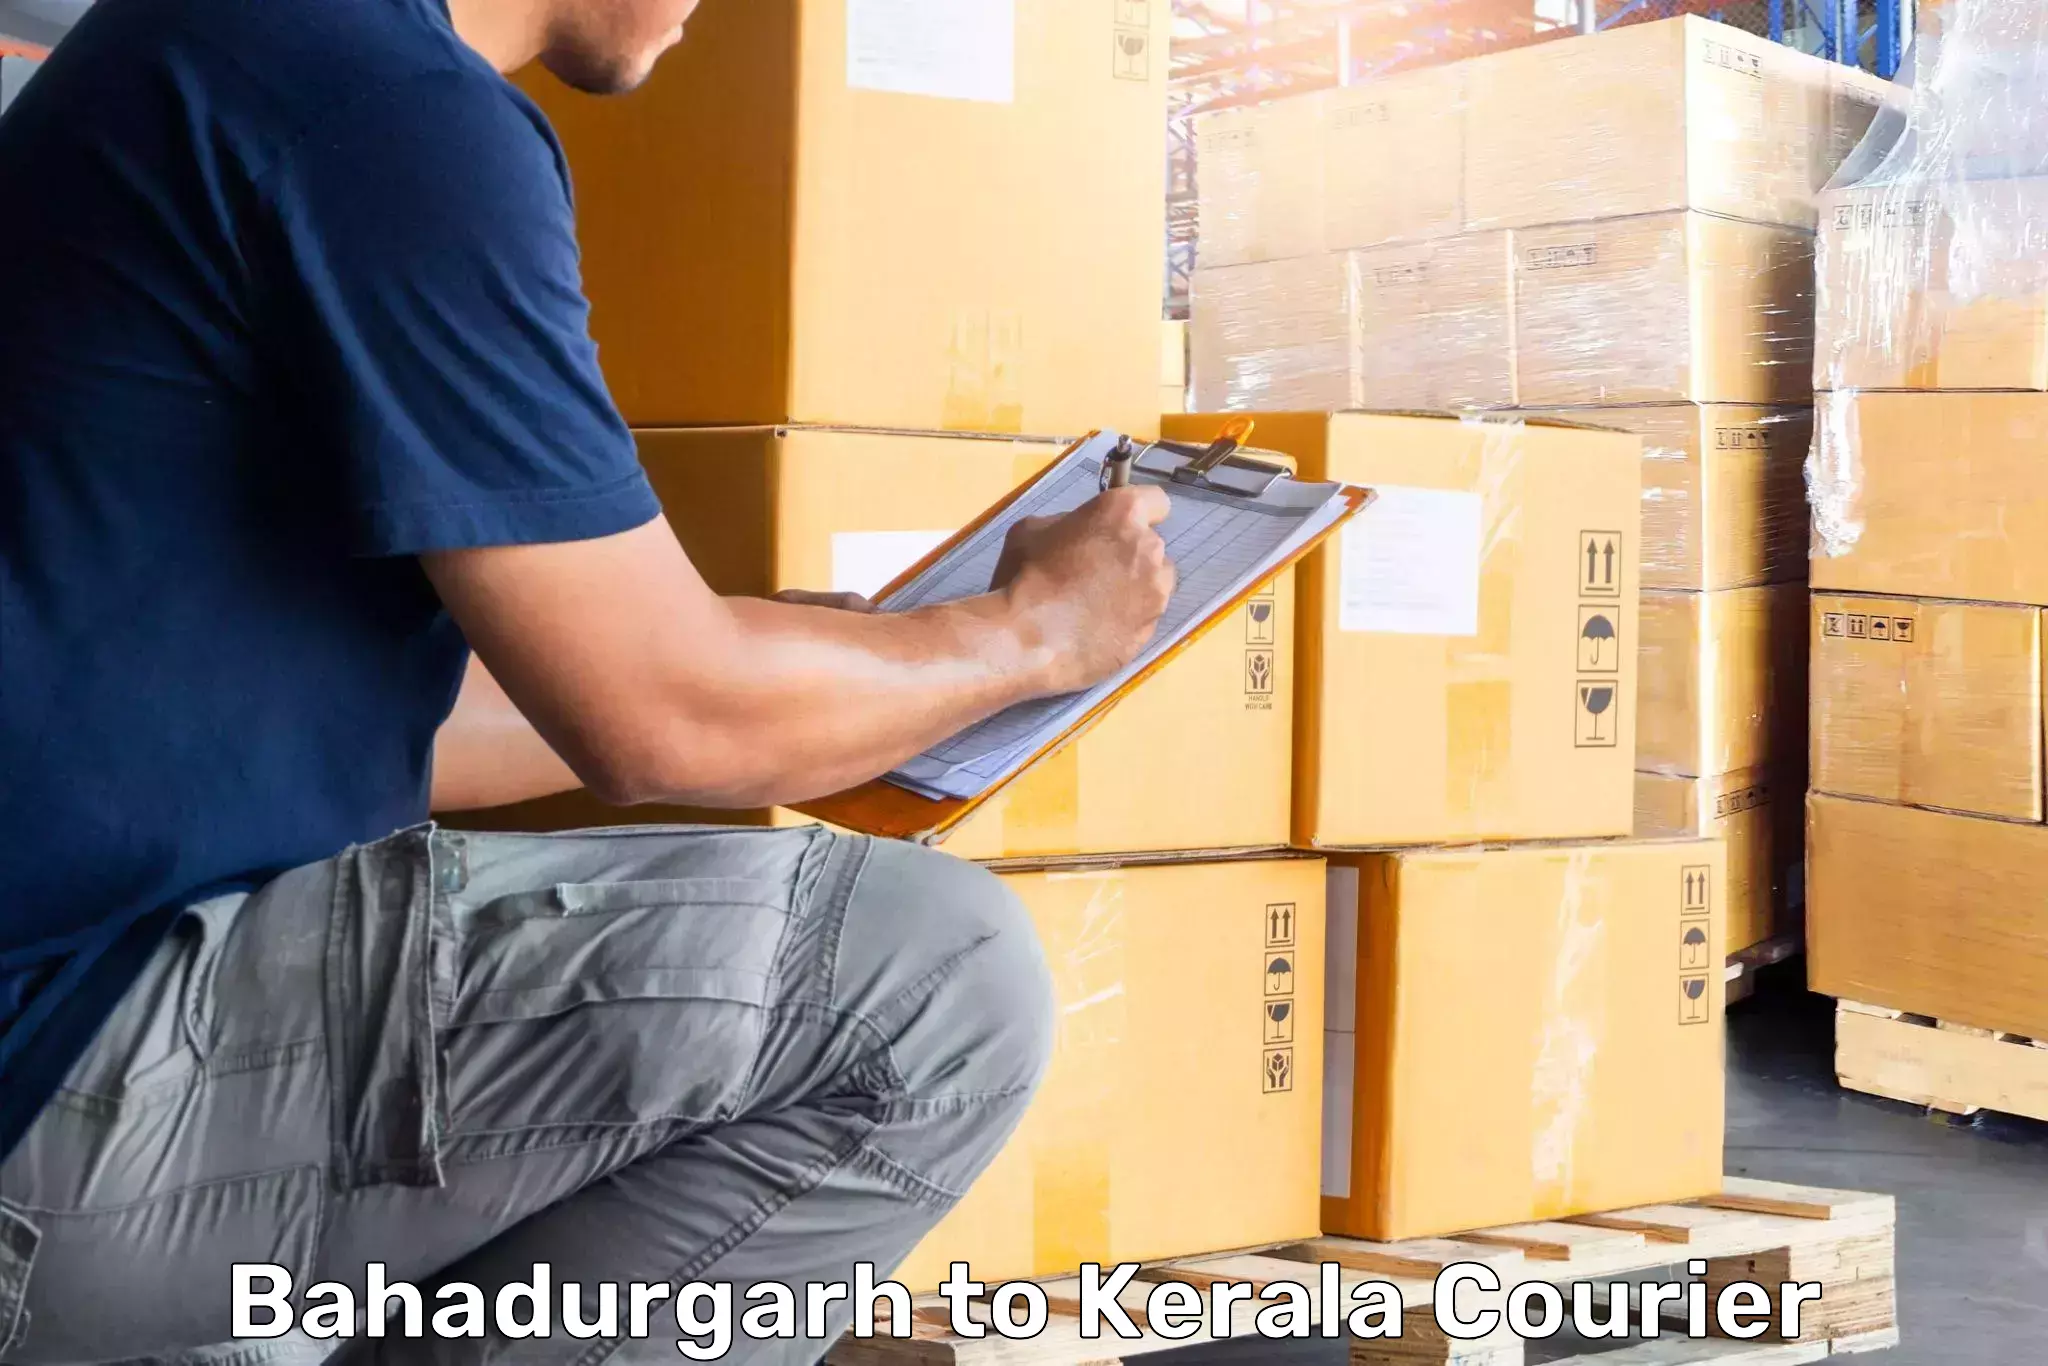 Baggage delivery scheduling Bahadurgarh to Muvattupuzha